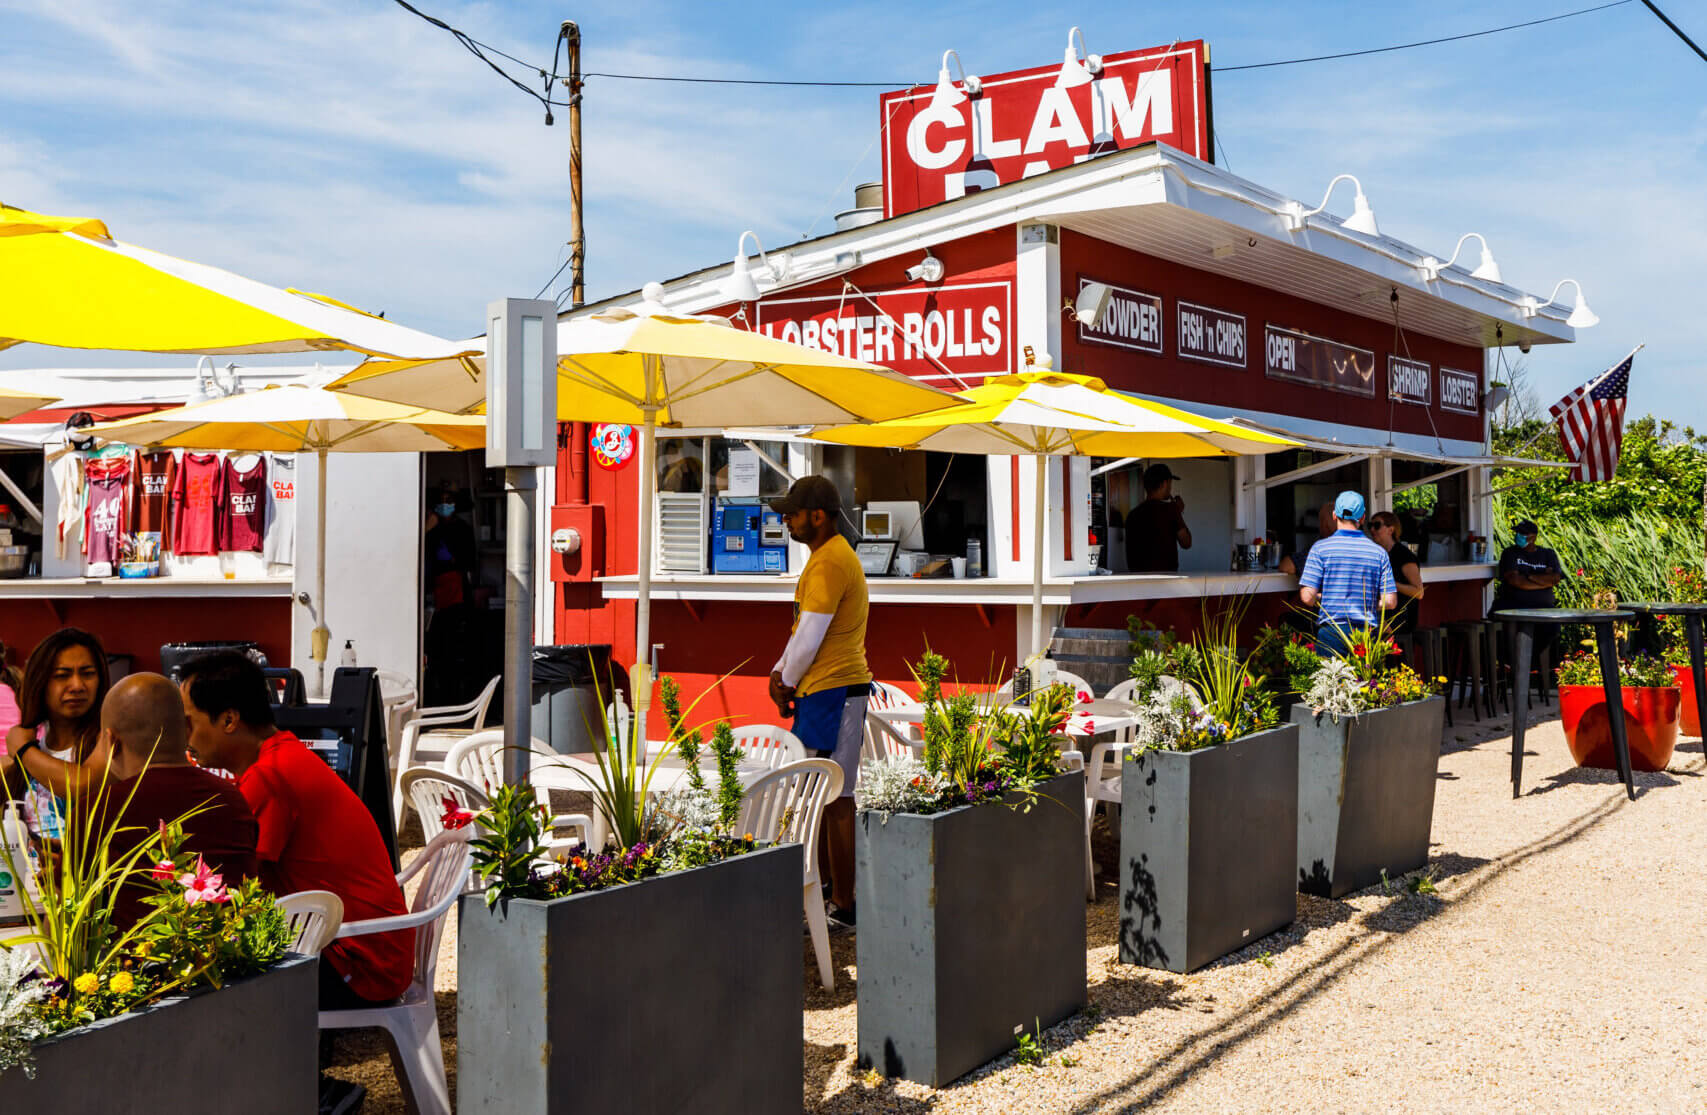 The Clam Bar